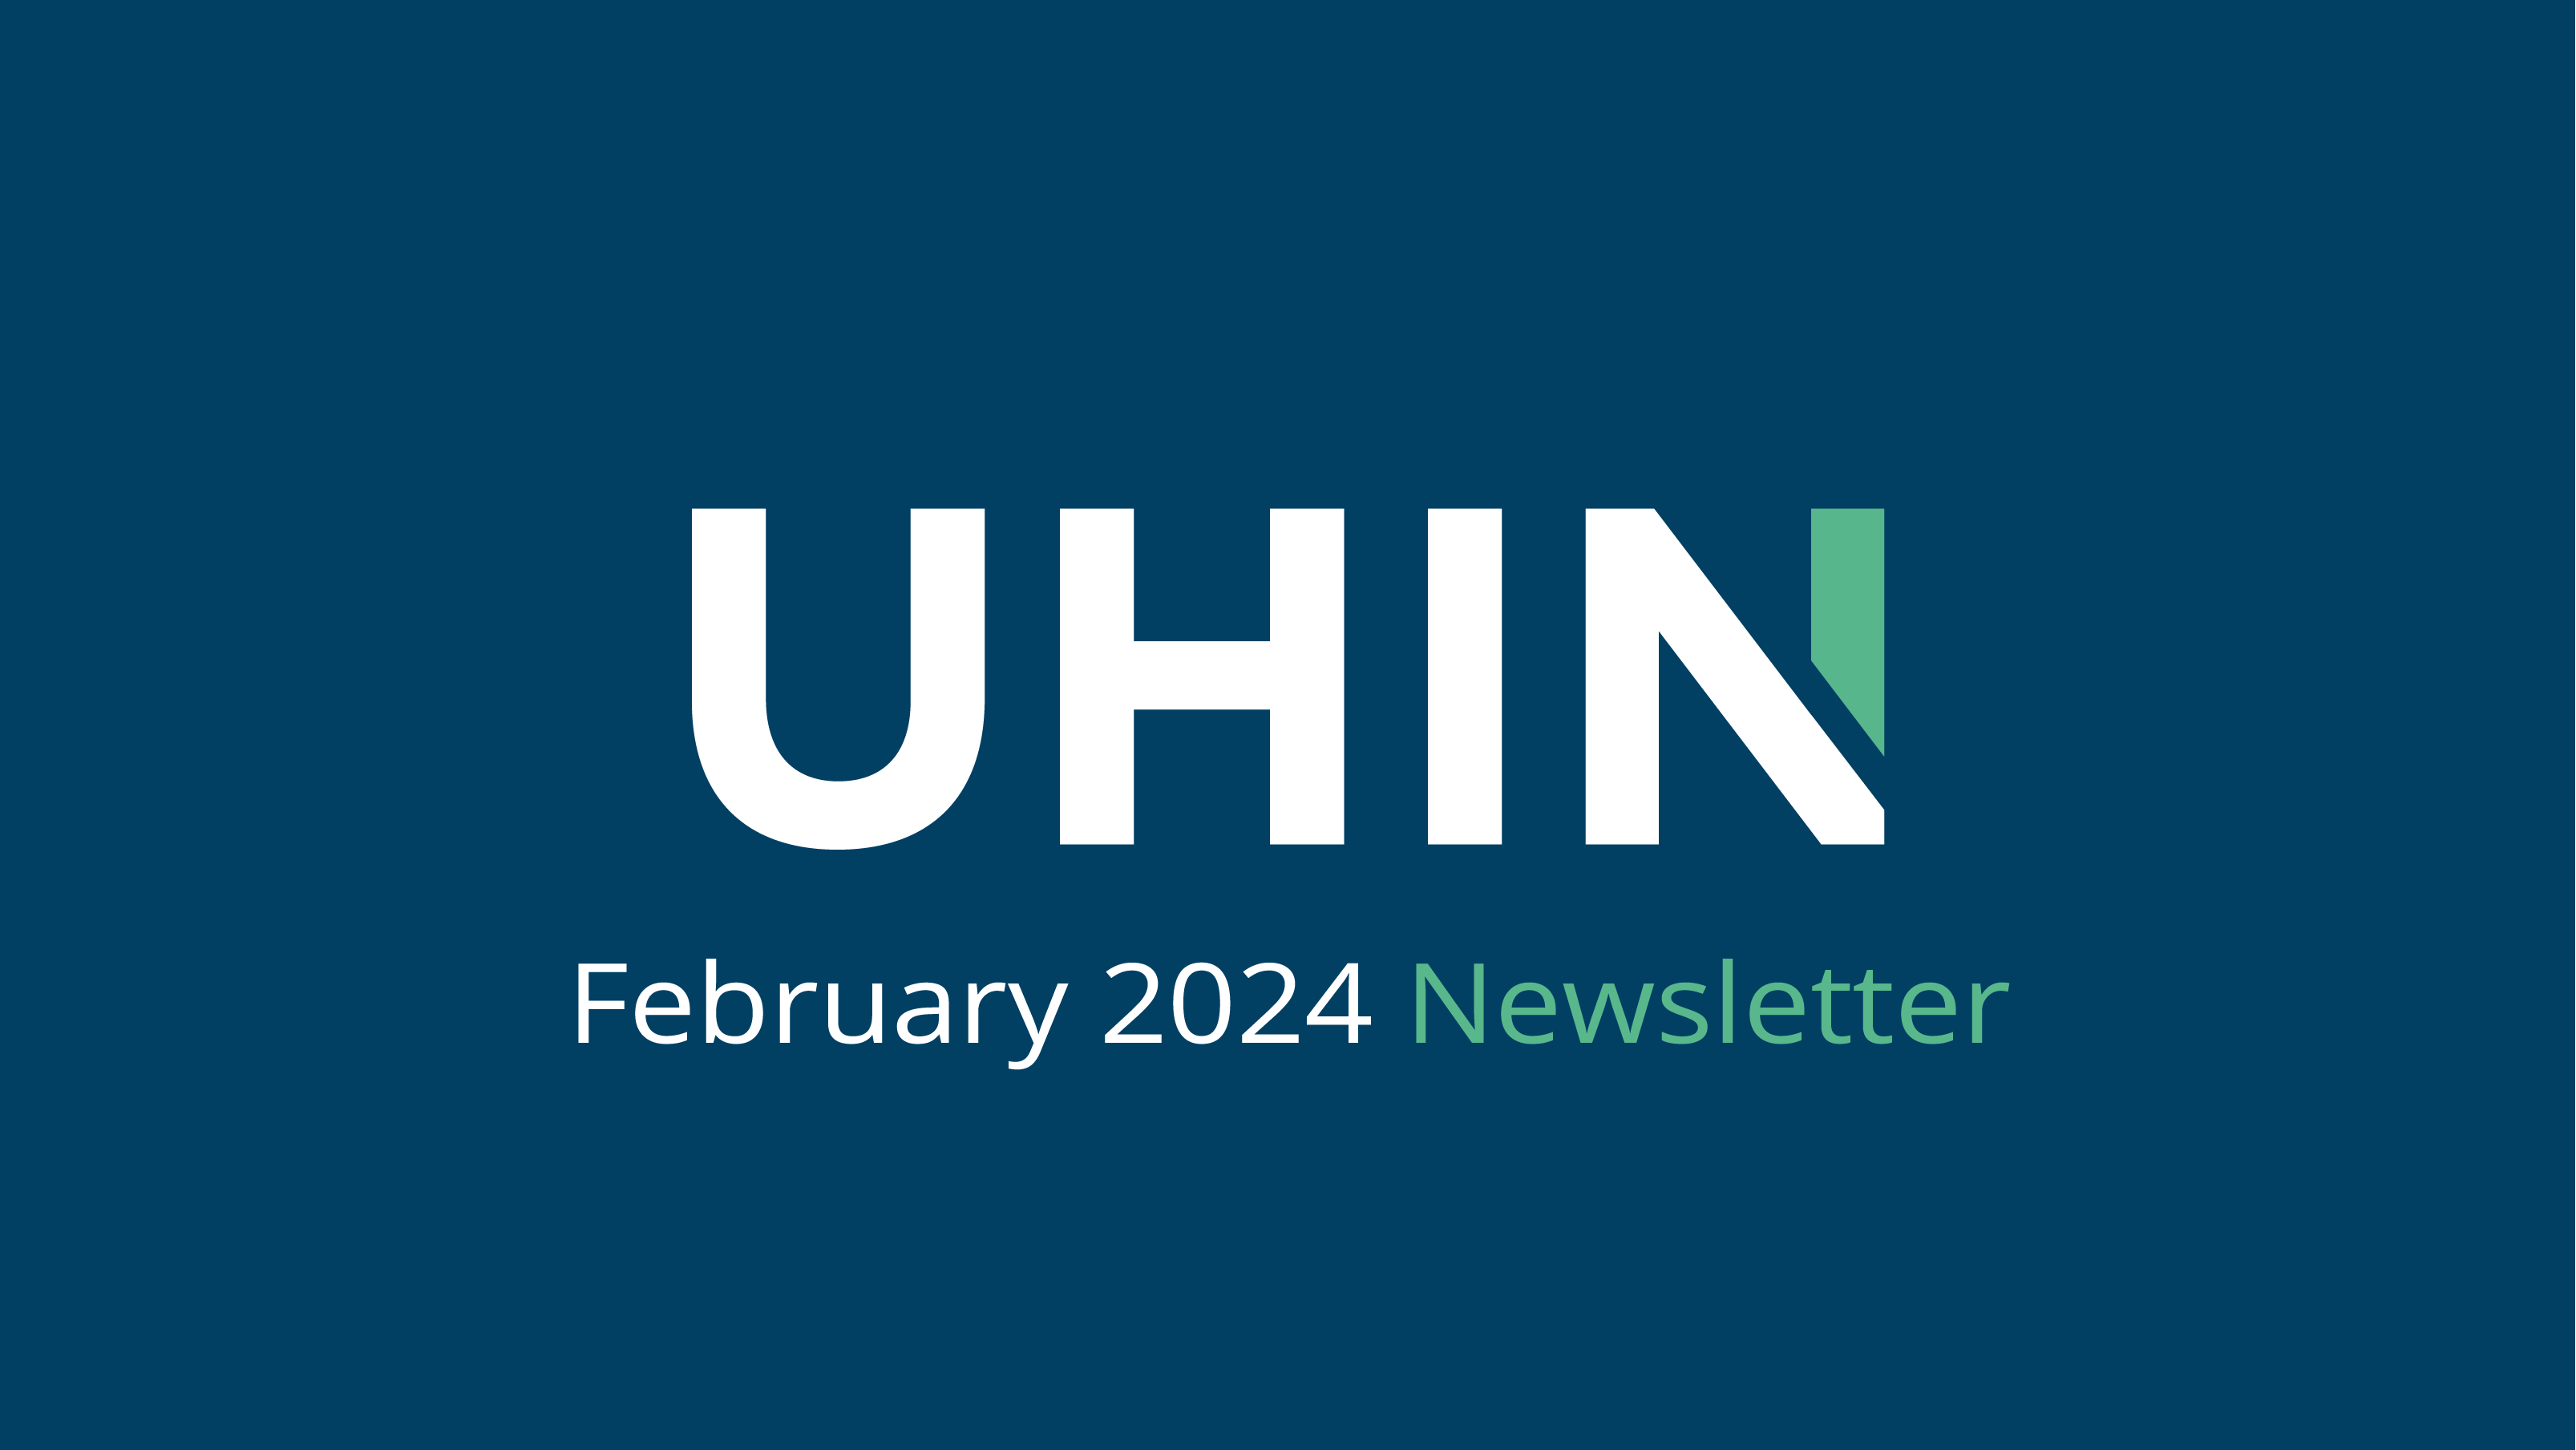 Newsletter: February 2024 Issue